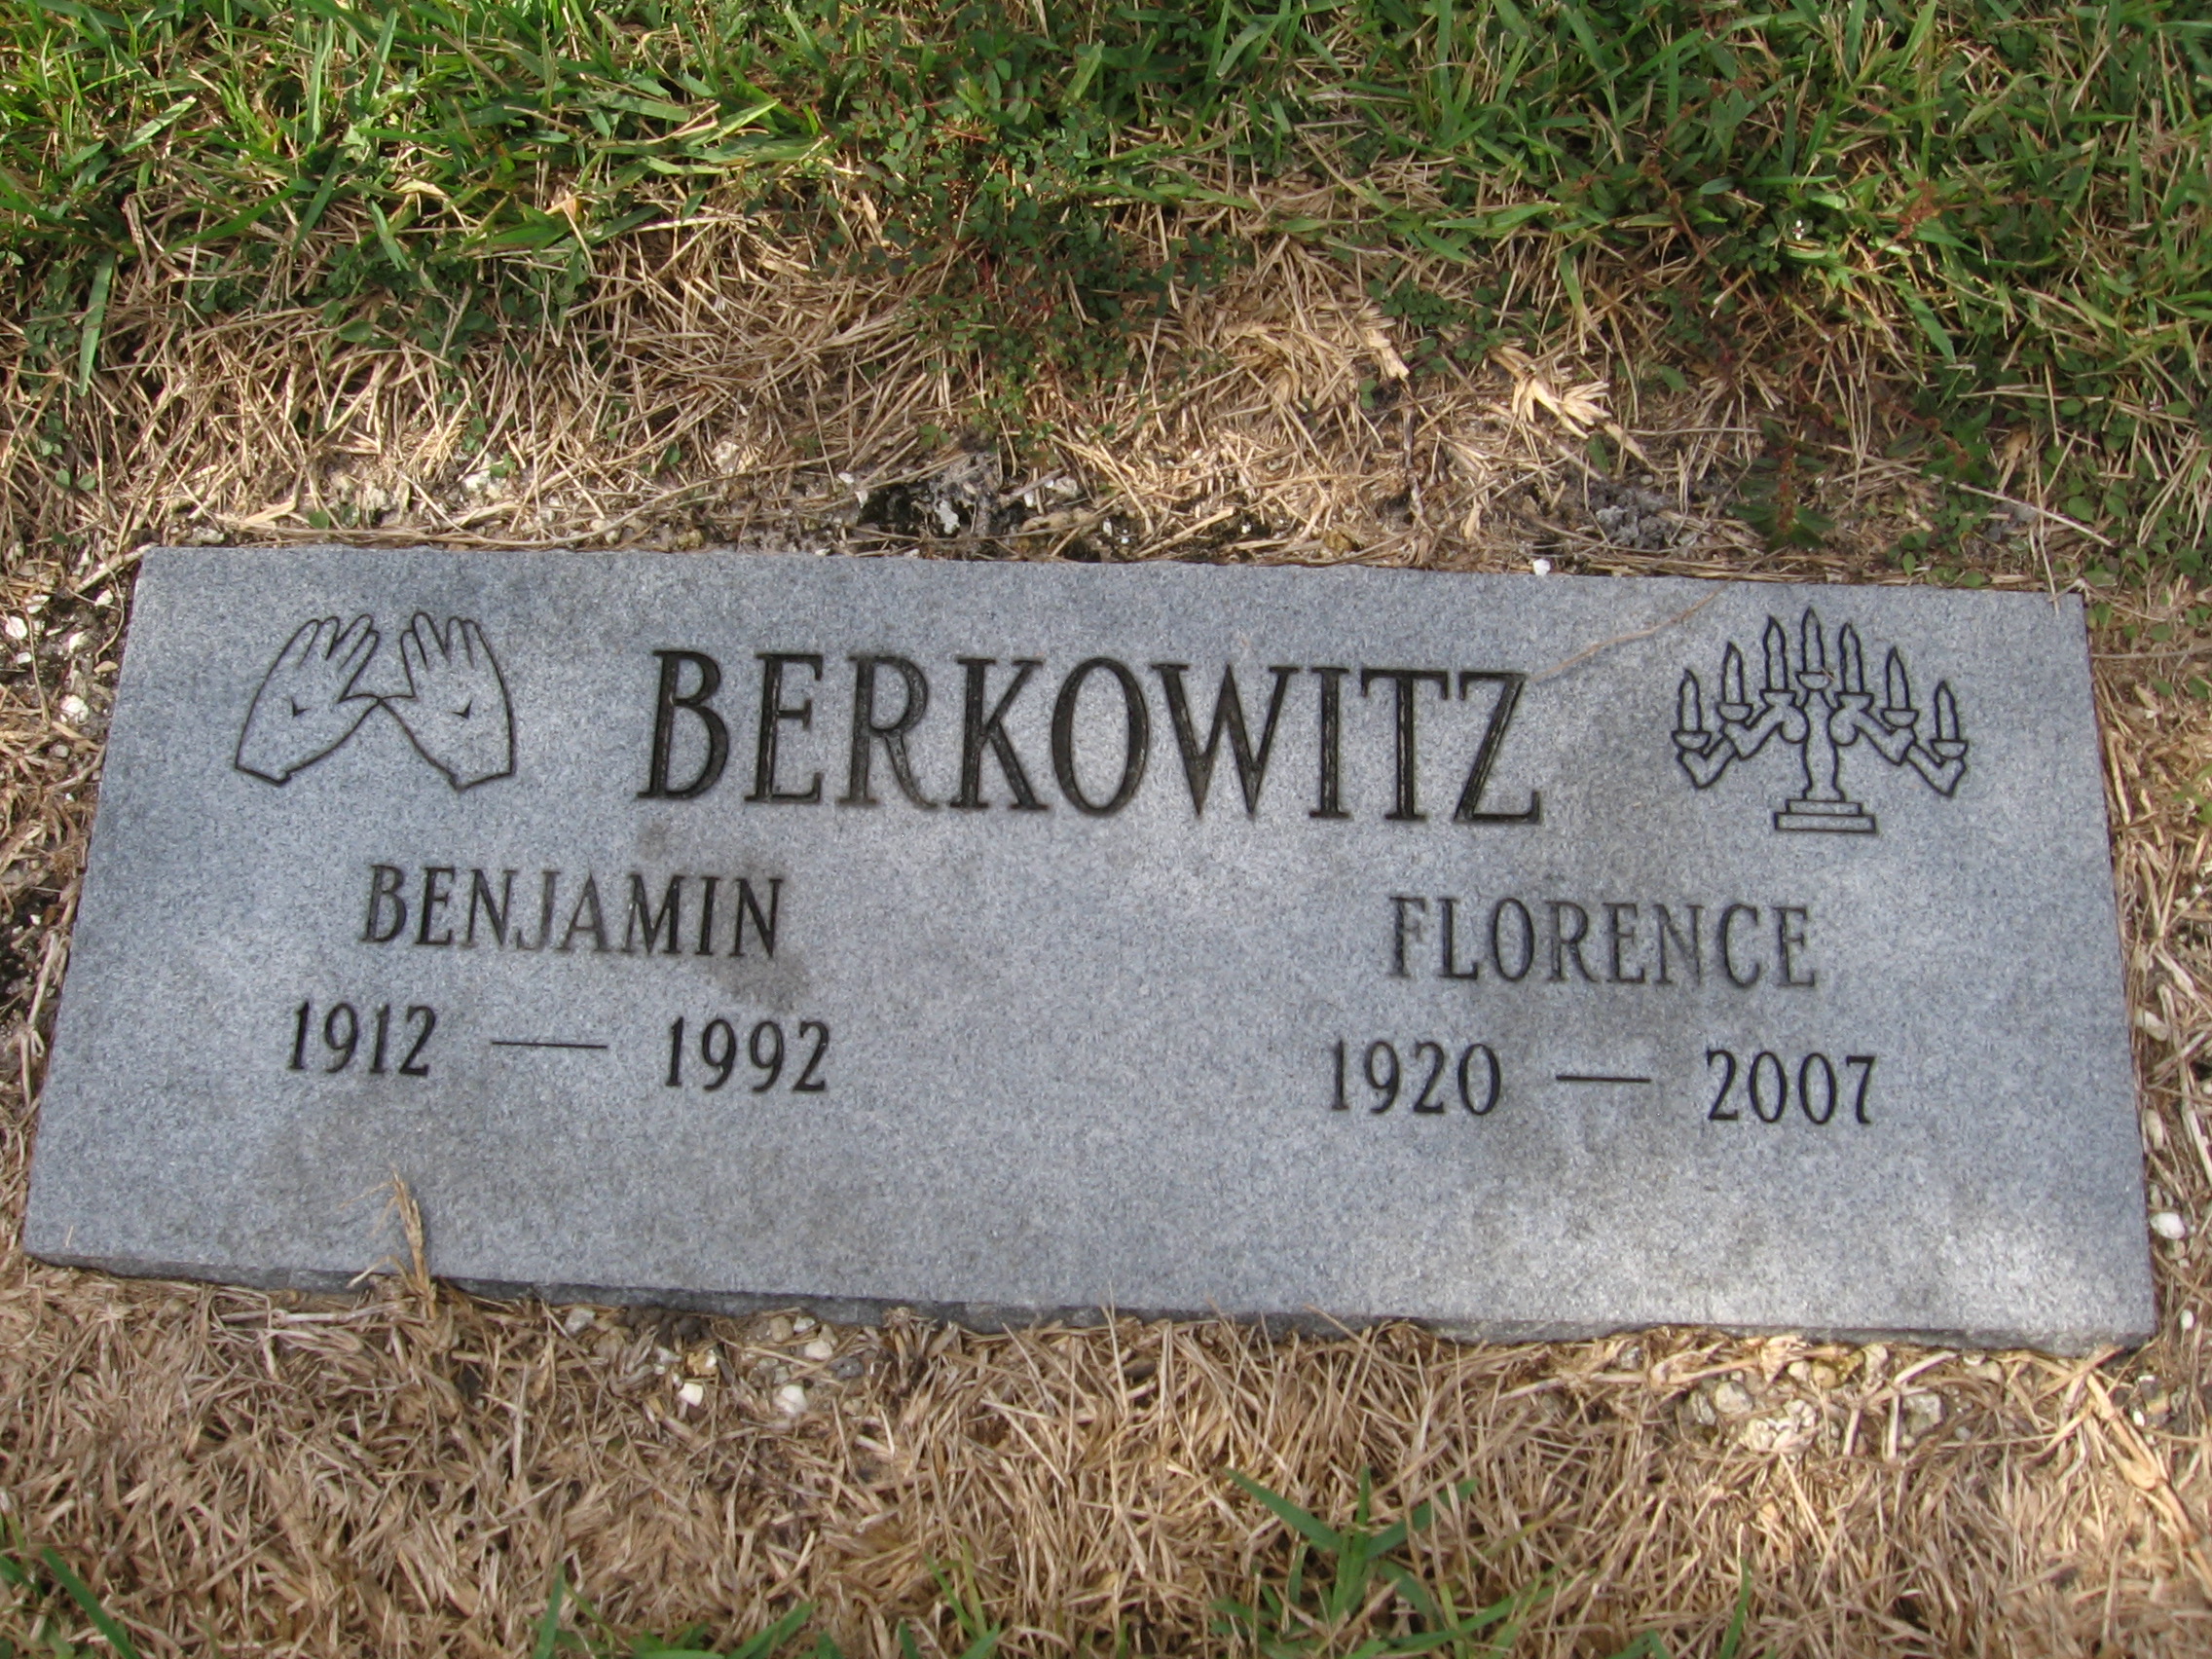 Benjamin Berkowitz